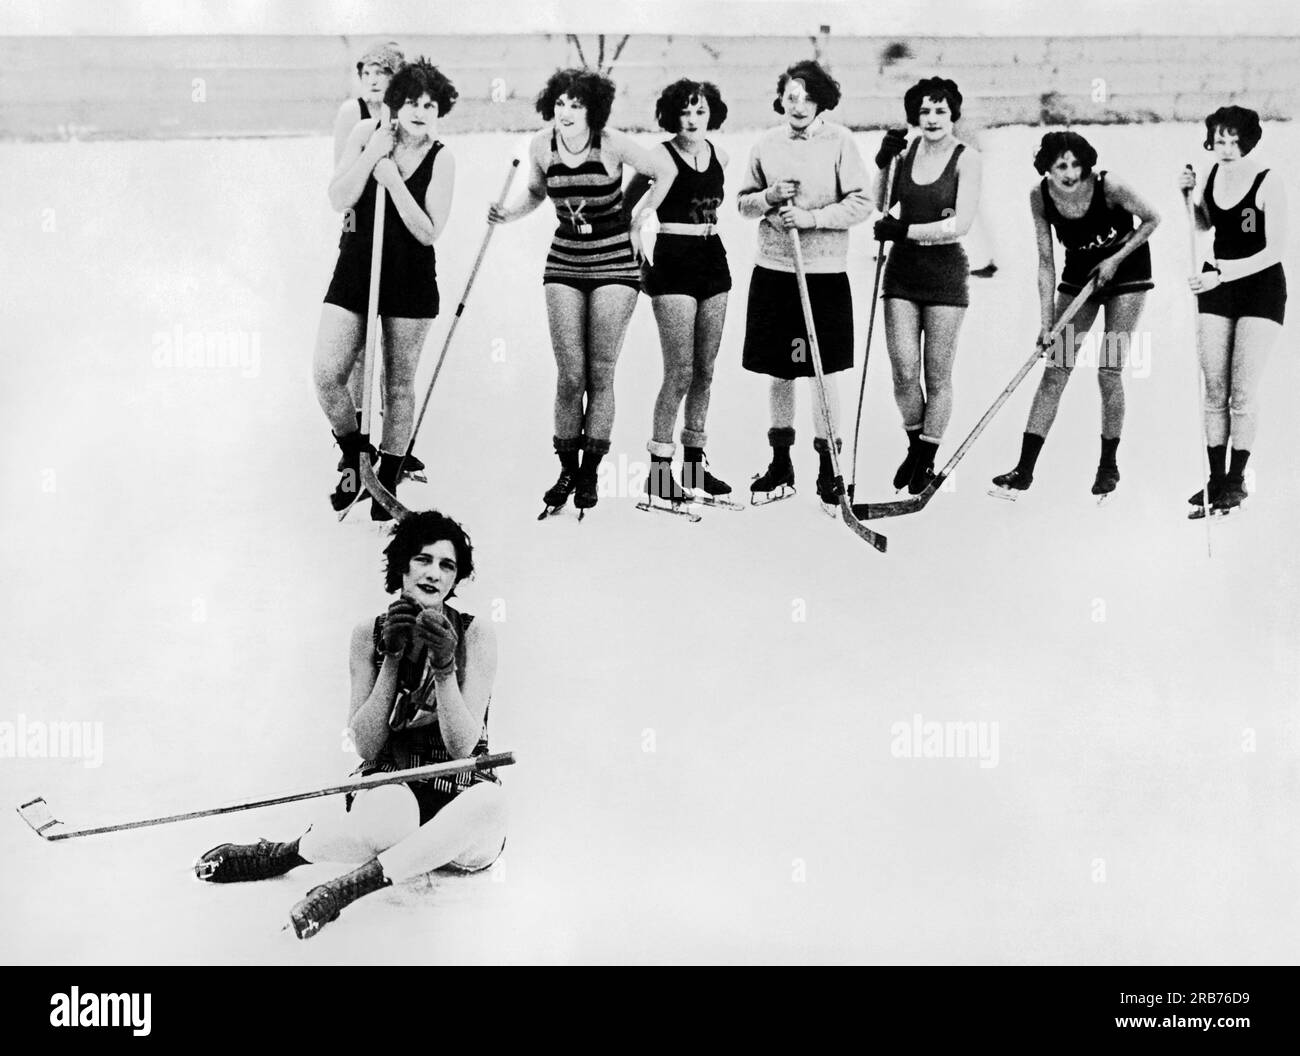 Buffalo, New York: c. 1928 i "Buffalo Snow Birds" giocano a hockey nel periodo invernale con i loro costumi da bagno per mantenersi in forma e in salute. Foto Stock